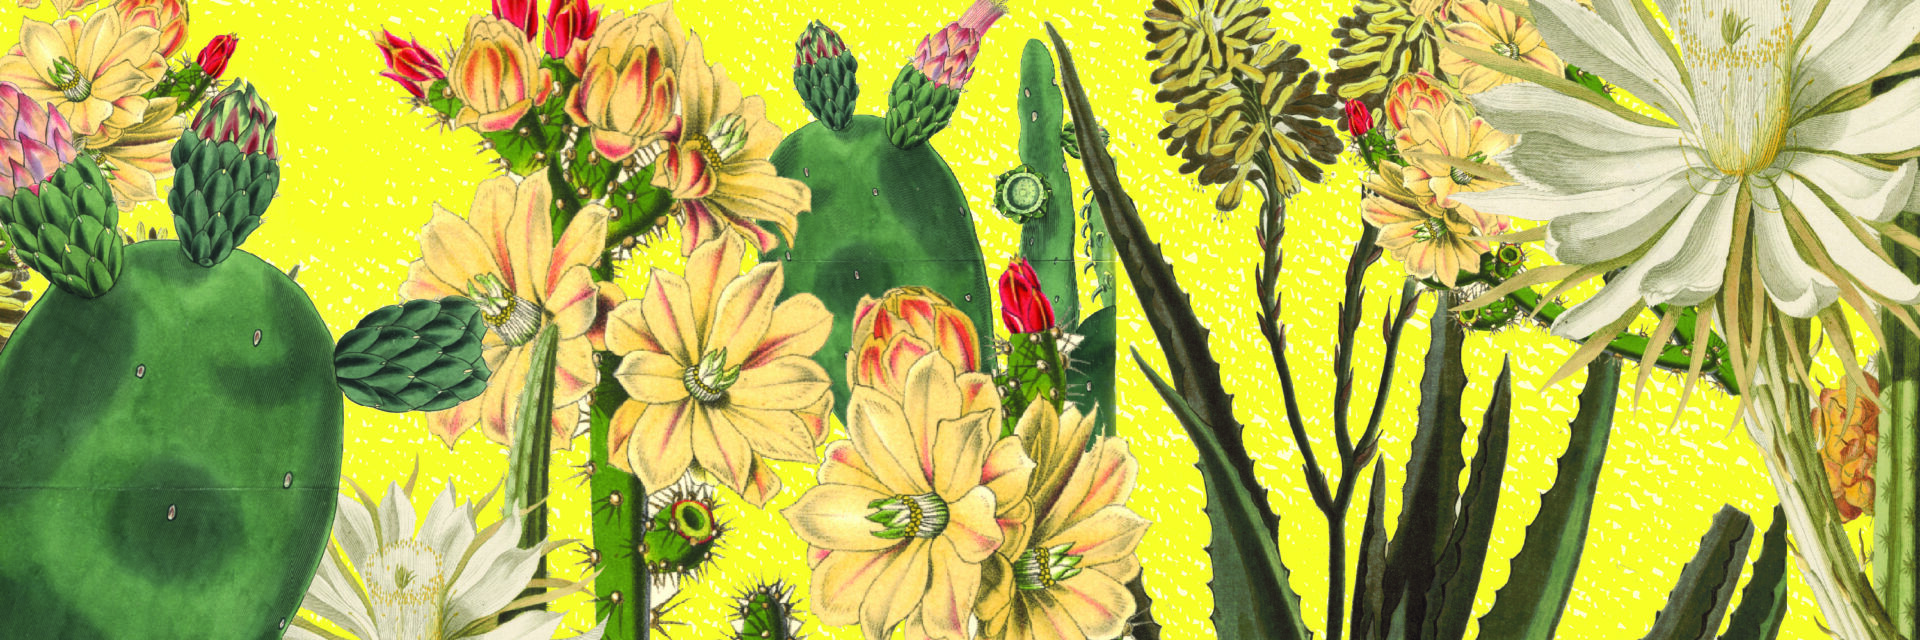 Arte del simposio de cactus